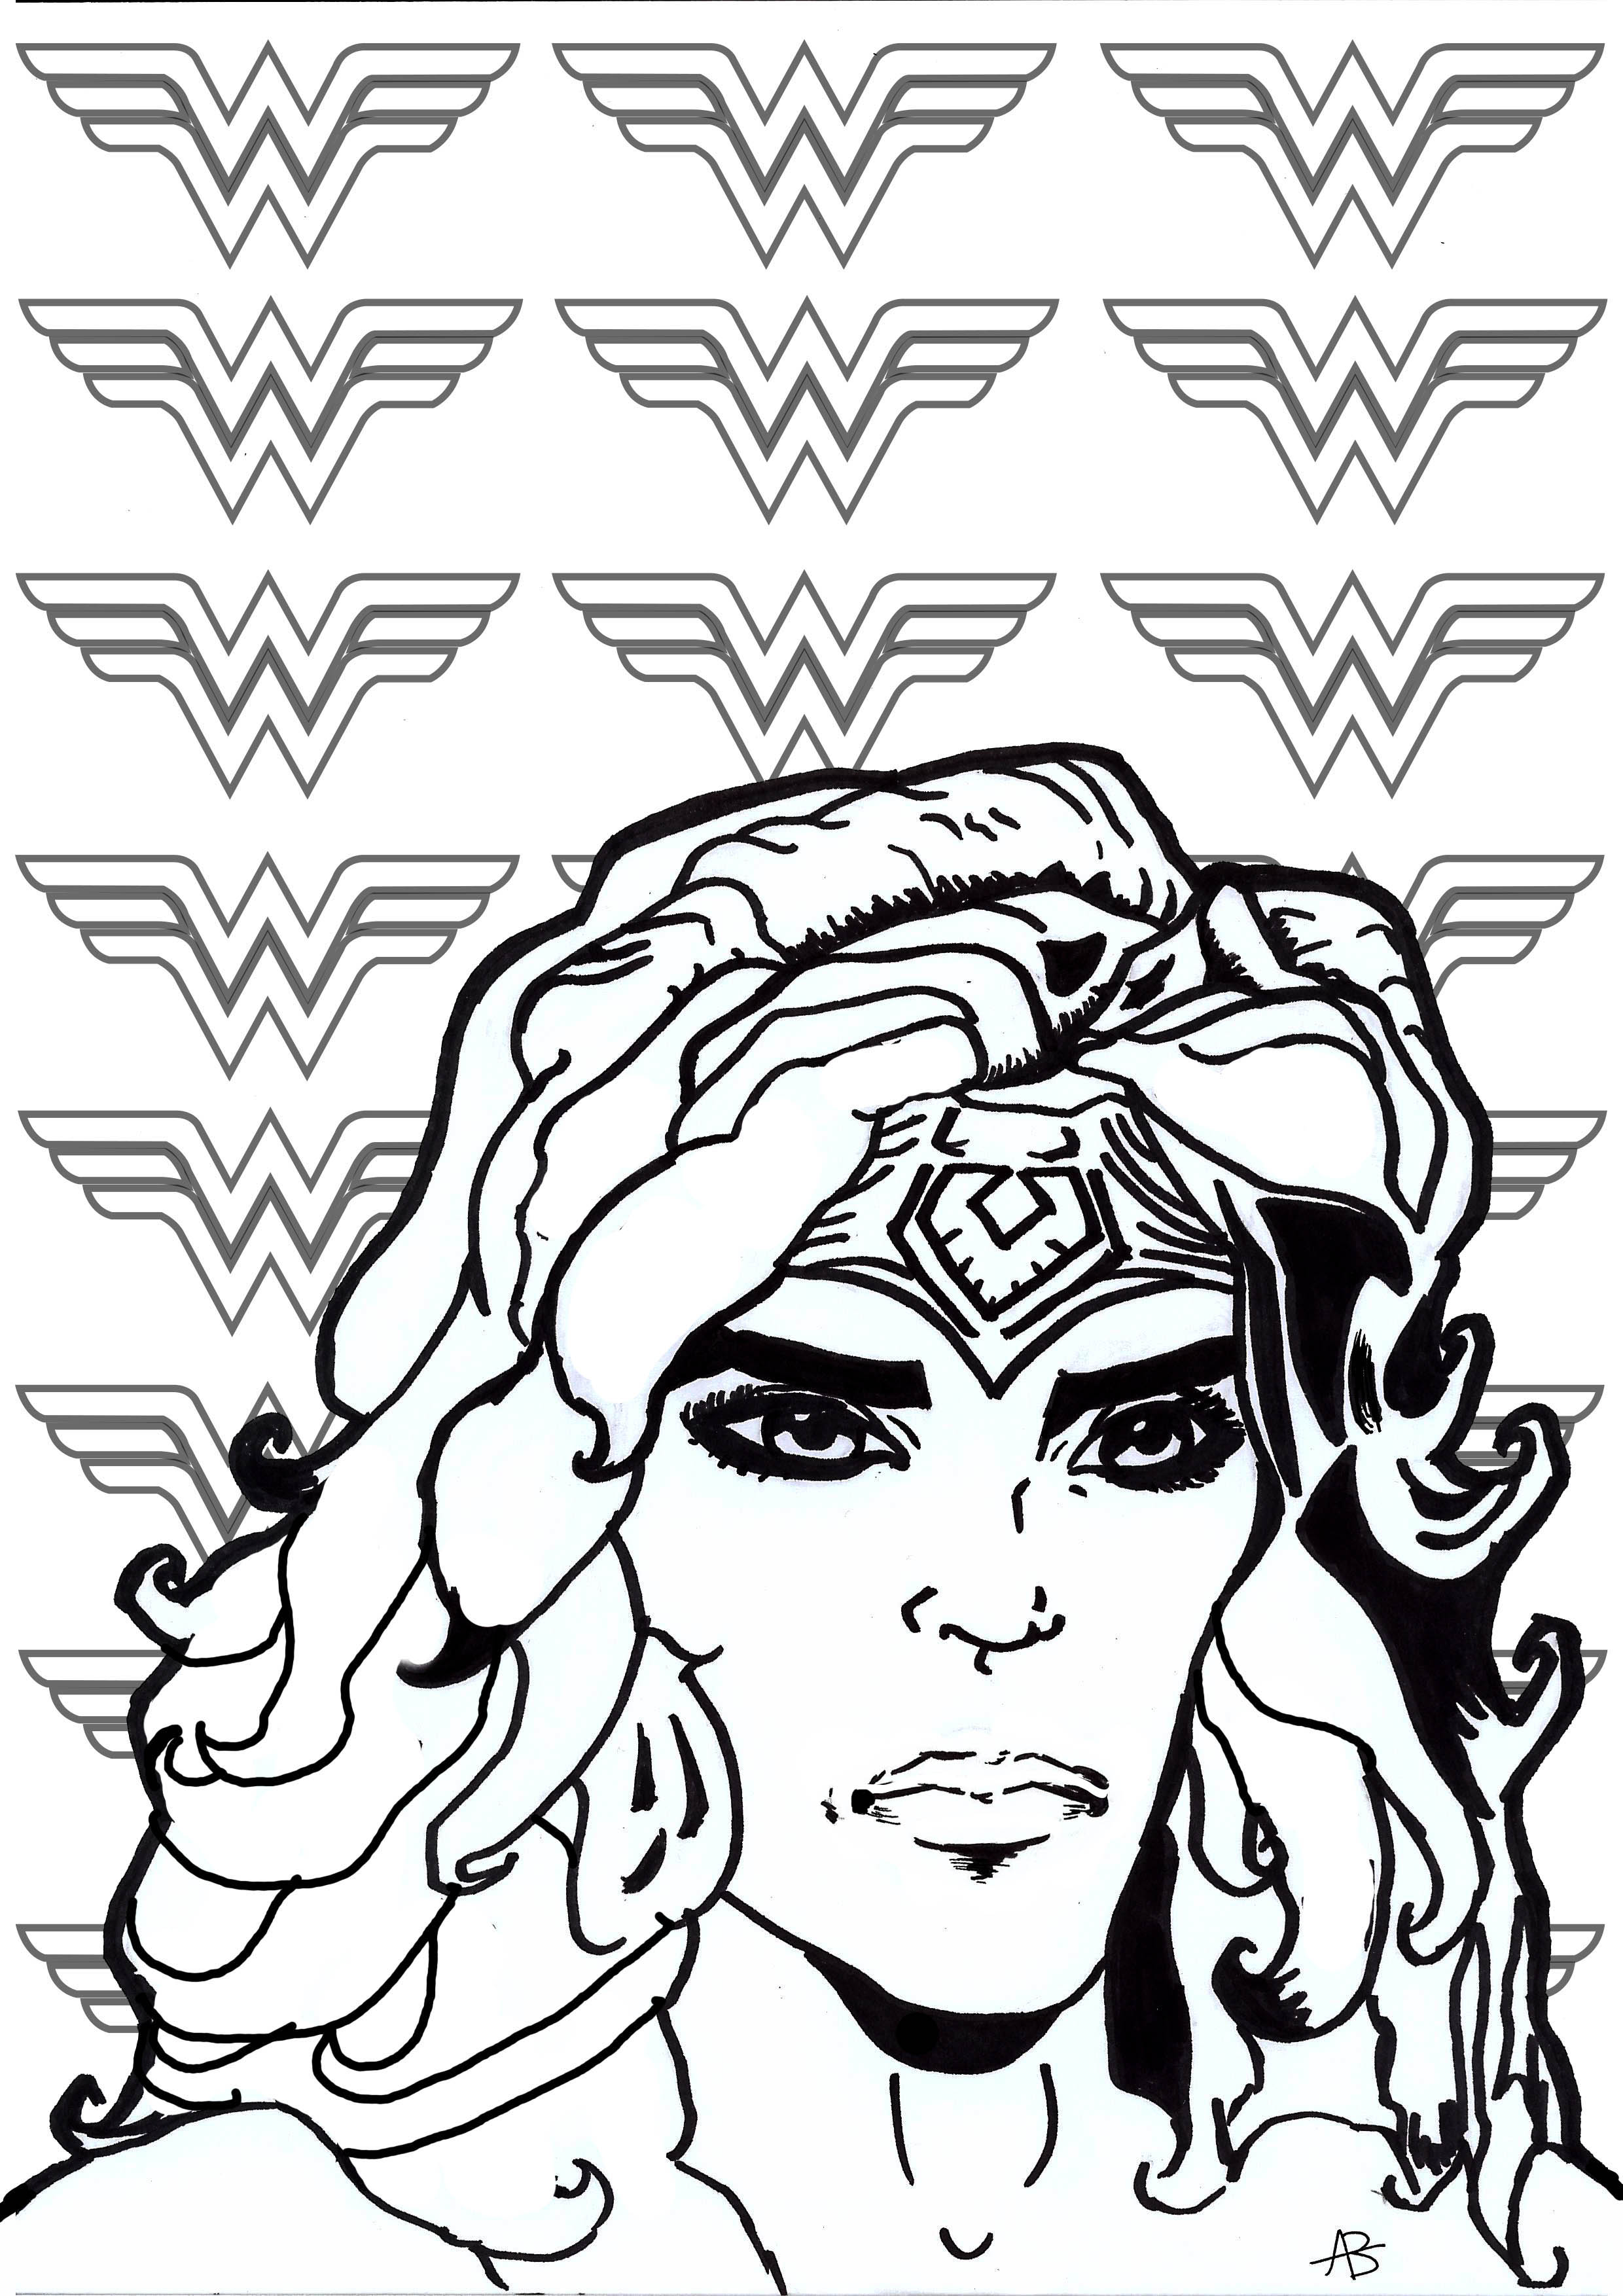 Malvorlage inspiriert von Wonder Woman (DC Comics Figur)